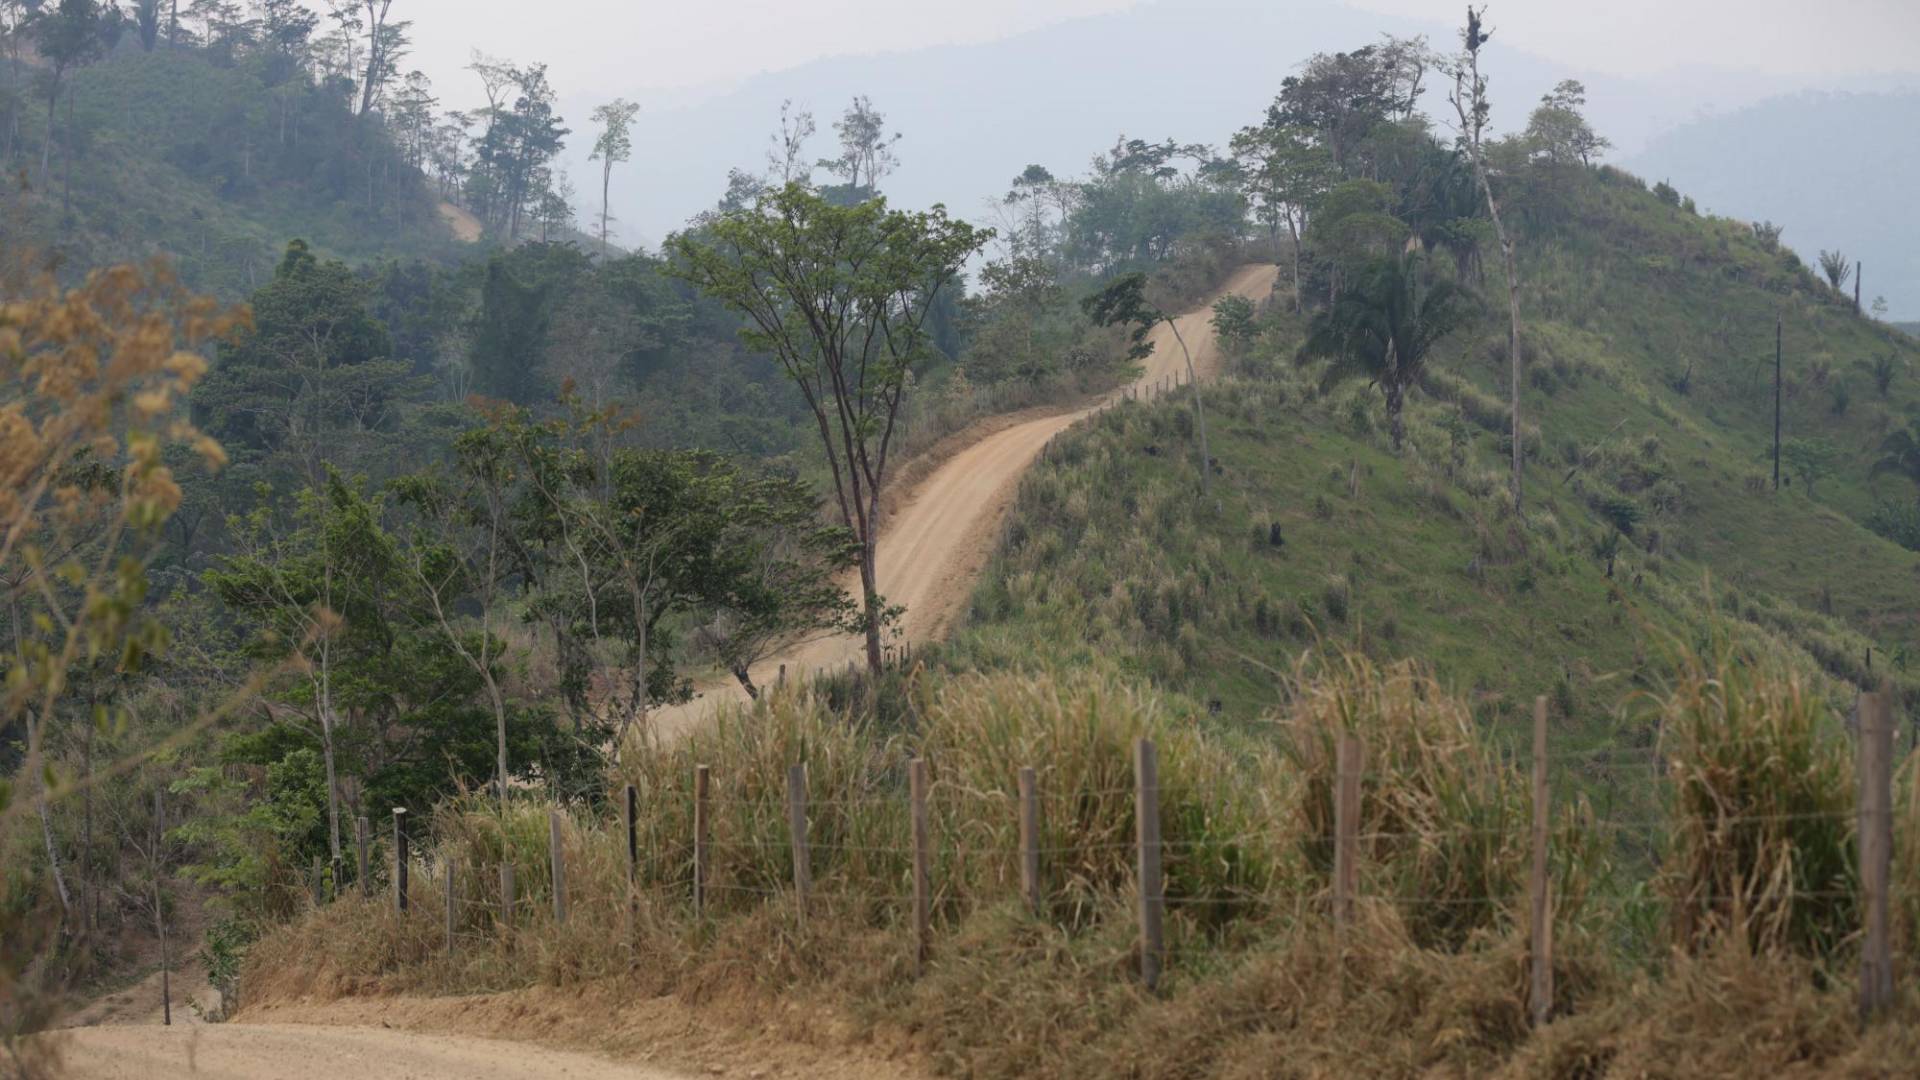 $!Algunos tramos de las narcocarreteras son sumamente inclinados, pero eso no detiene el avance. Los antecedentes muestran que después la deforestación continúa sin piedad.